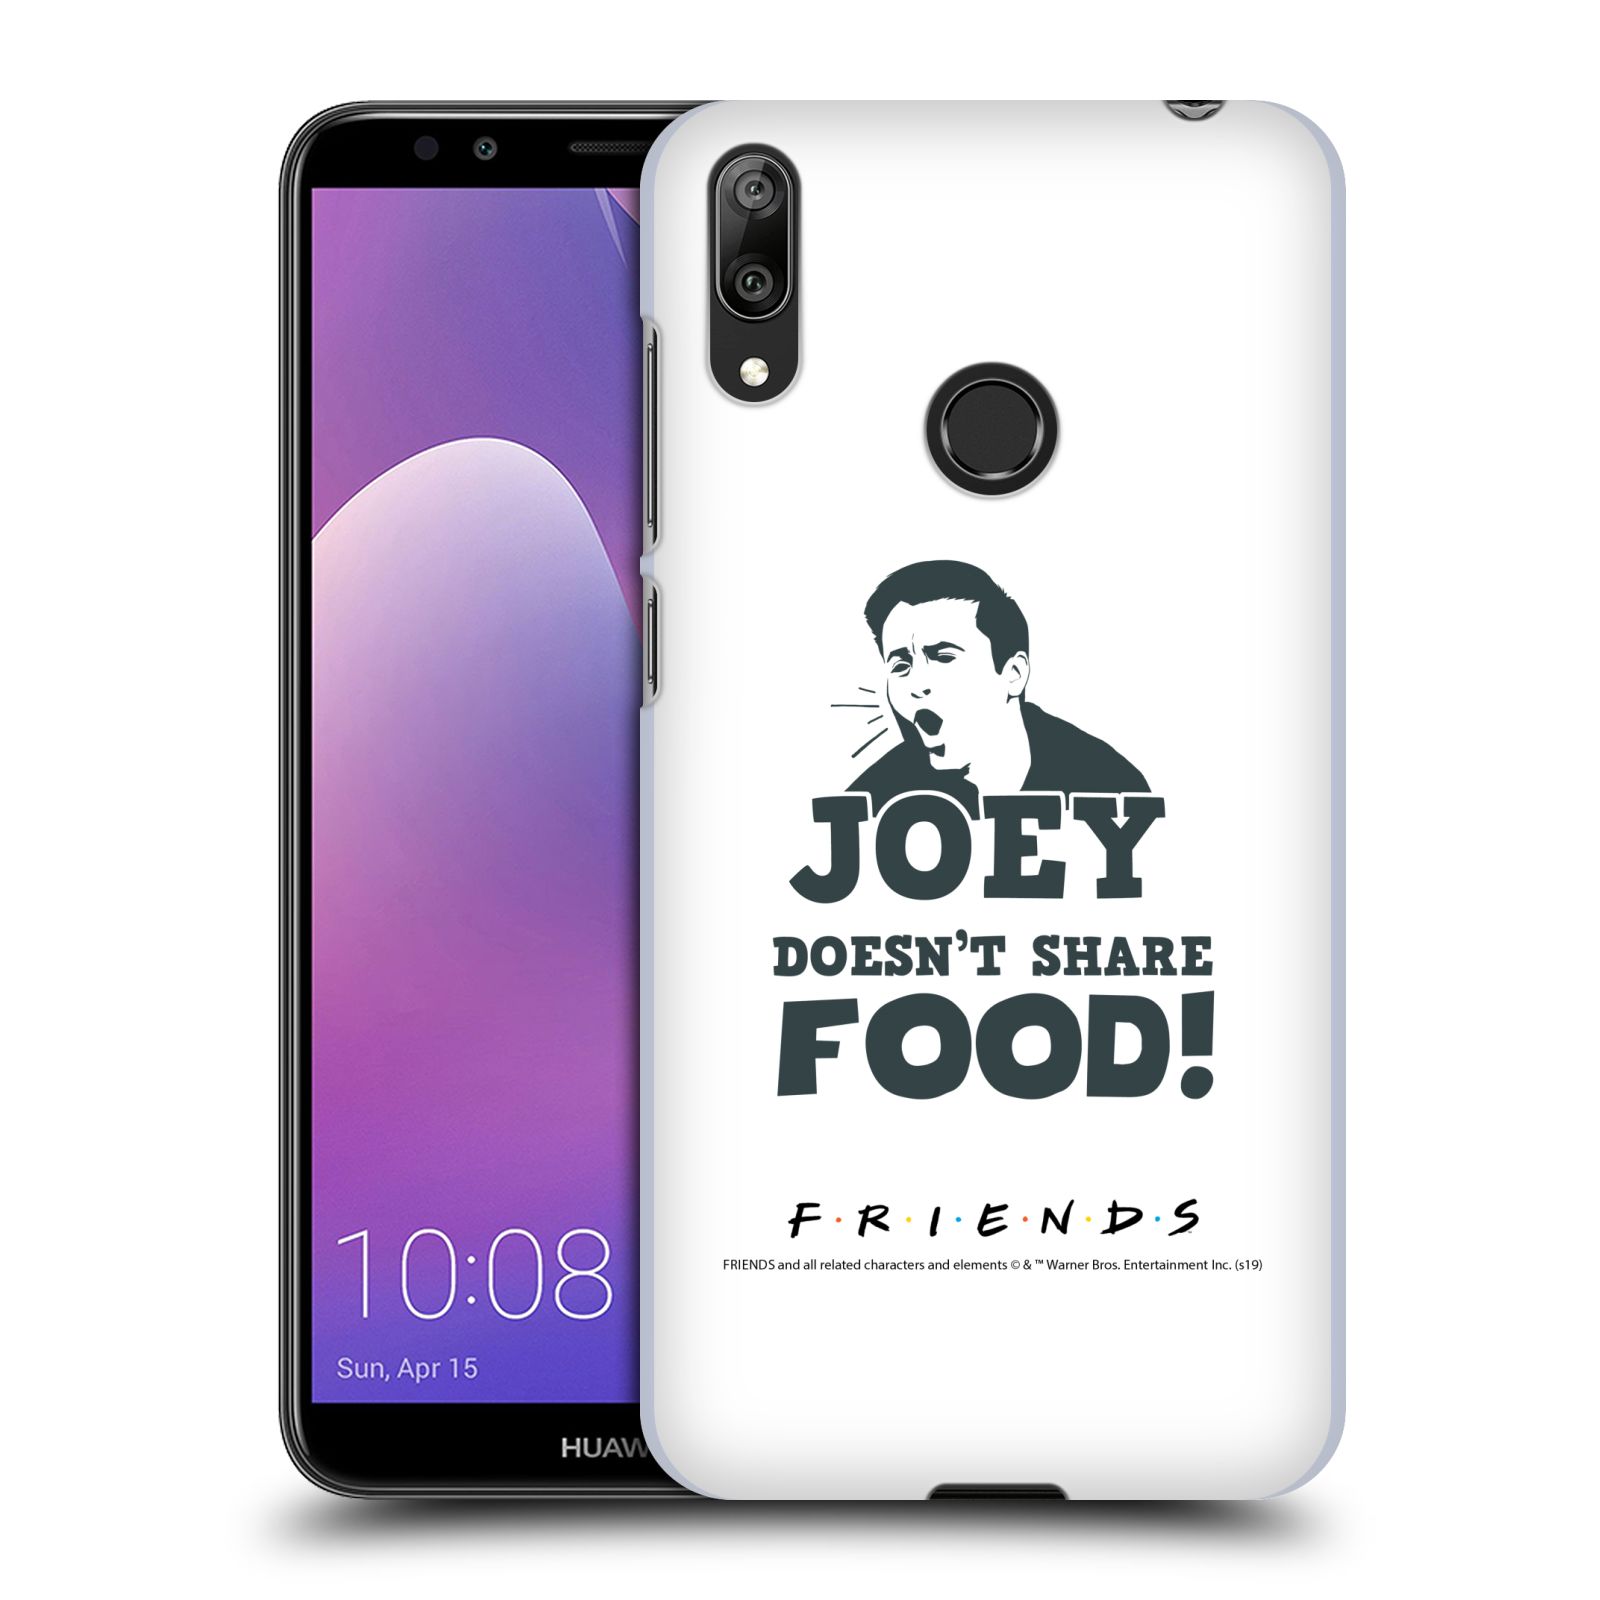 Pouzdro na mobil Huawei Y7 2019 - HEAD CASE - Seriál Přátelé - Joey se o jídlo nedělí